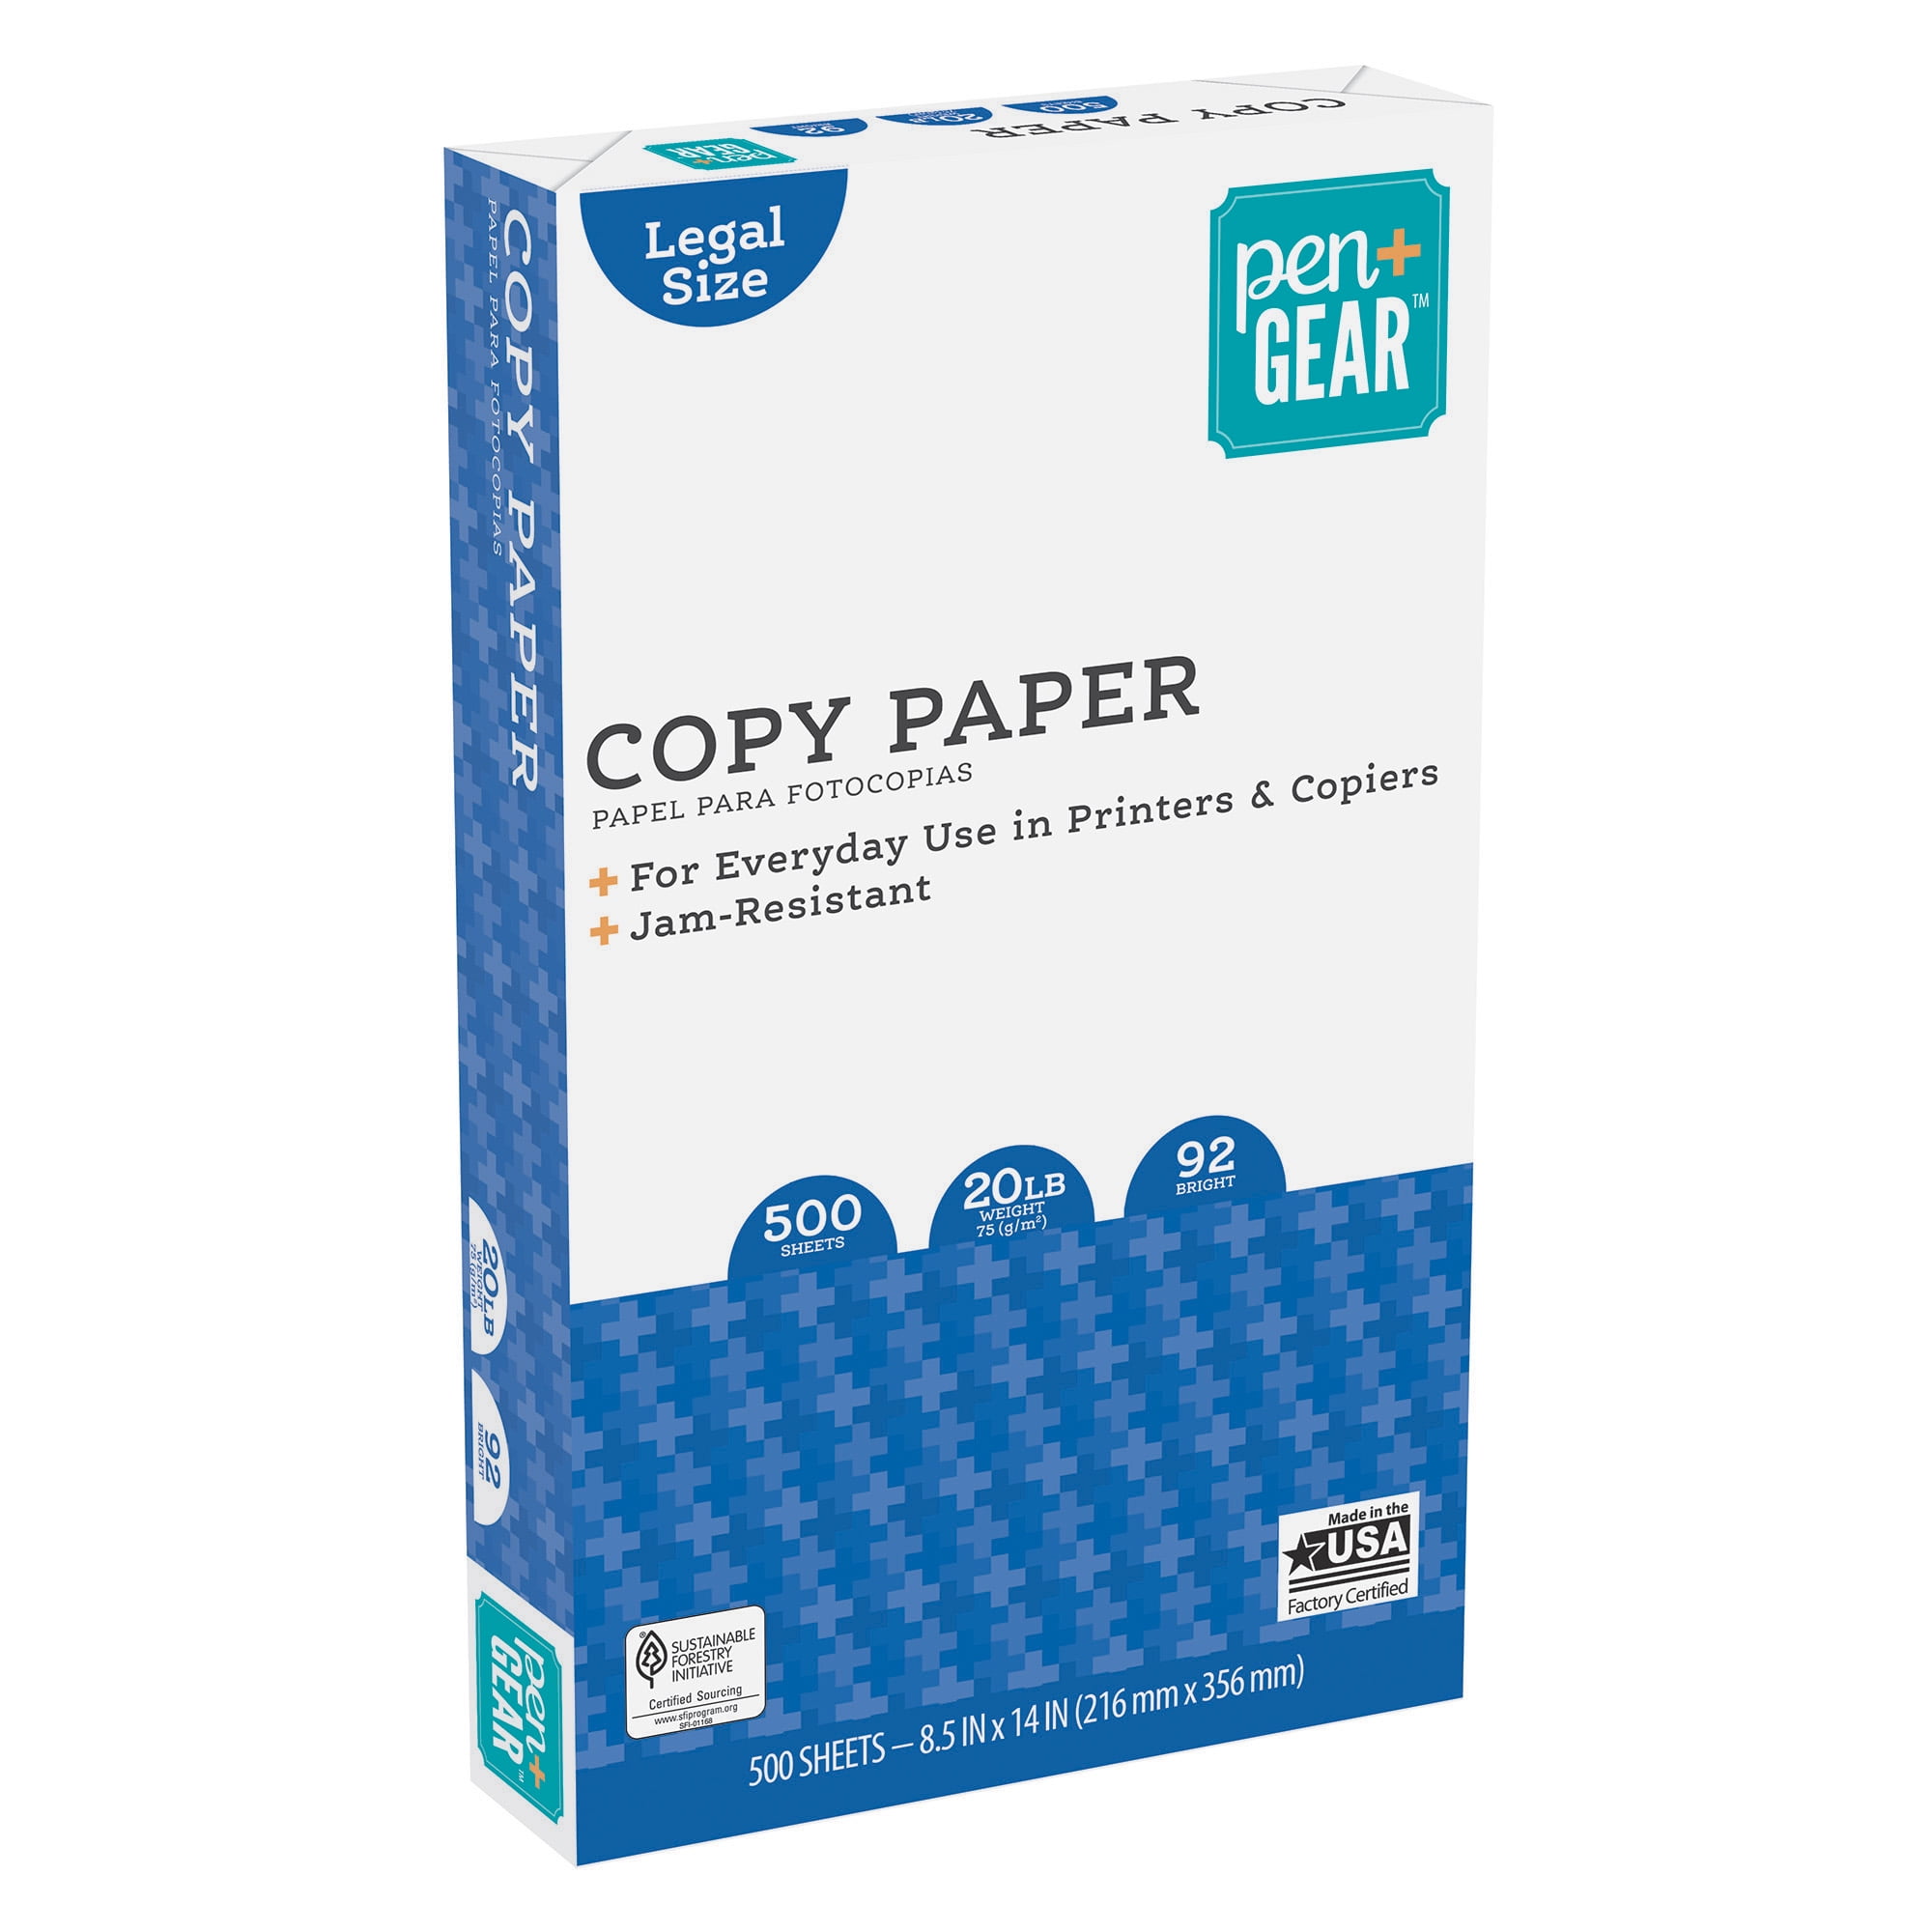 Pen + Gear Copy Paper, Assorted Bright, 8.5 x 11, 24 lb, 600 Sheets